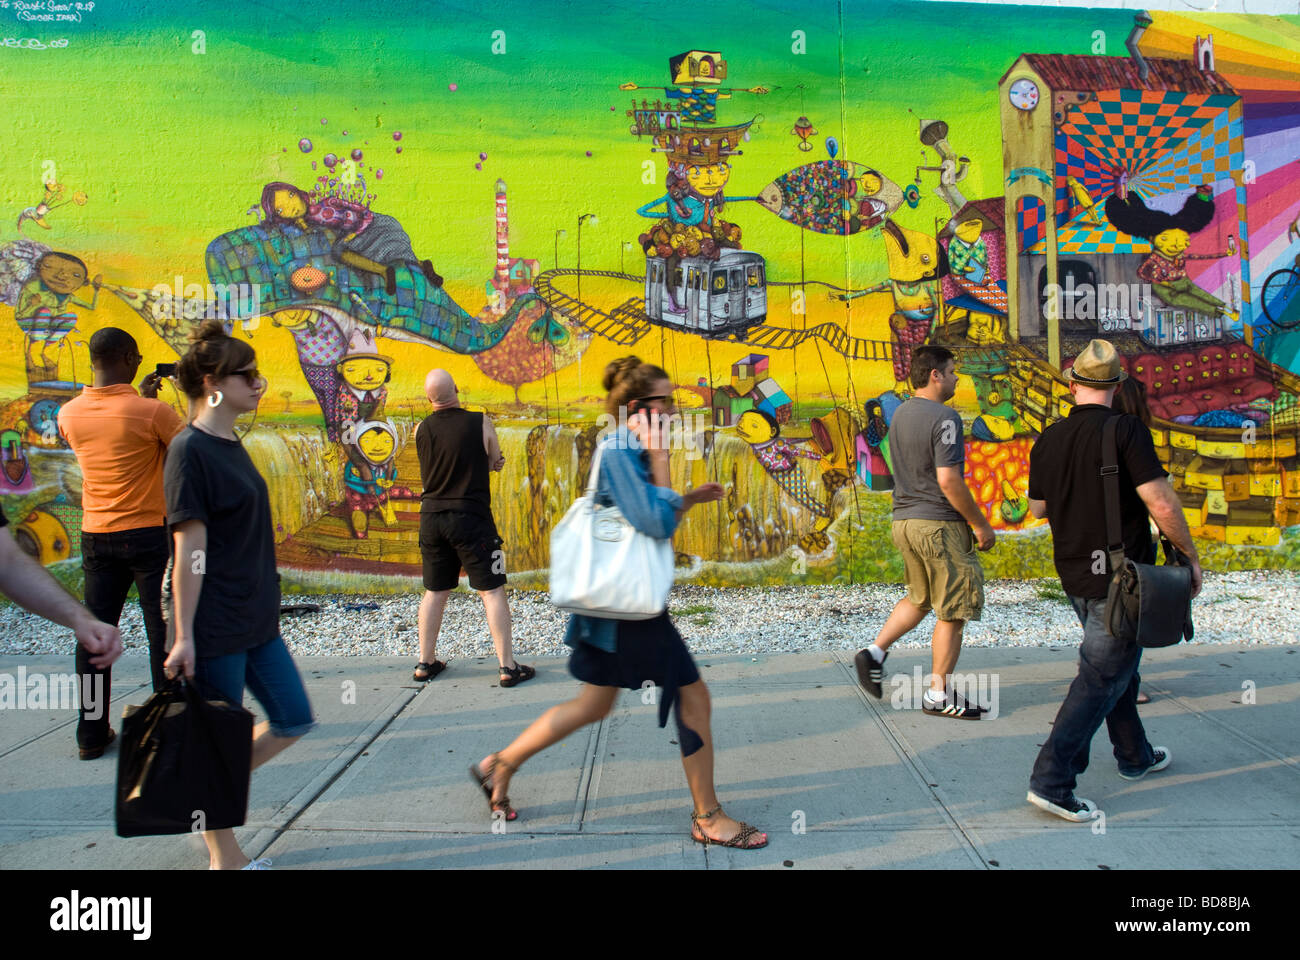 Passanten beobachten oder ein Wandbild von der brasilianischen Graffiti-Künstlern Os Gémeos in New York zu ignorieren Stockfoto